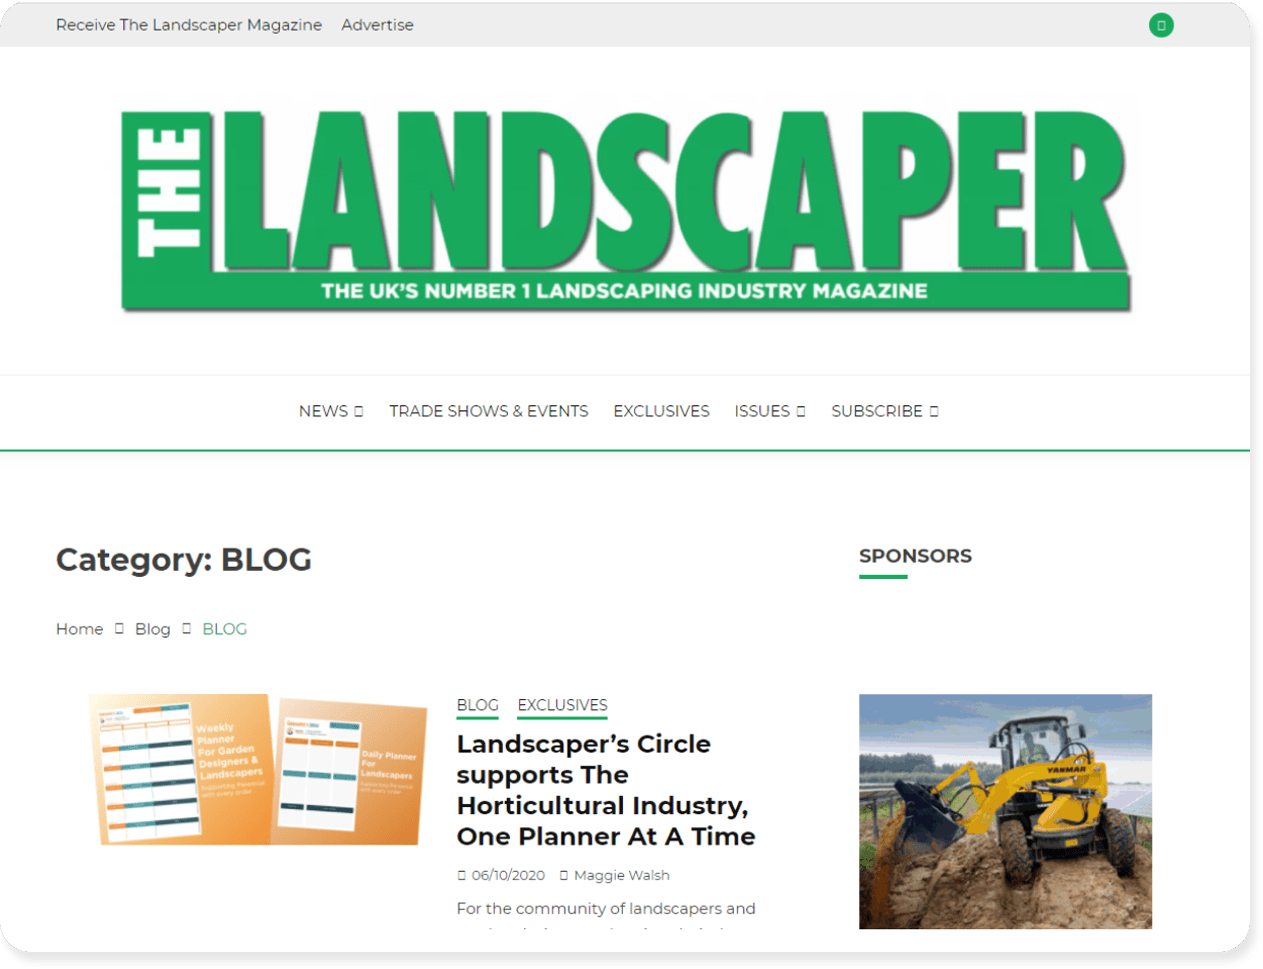 The Landscaper blog